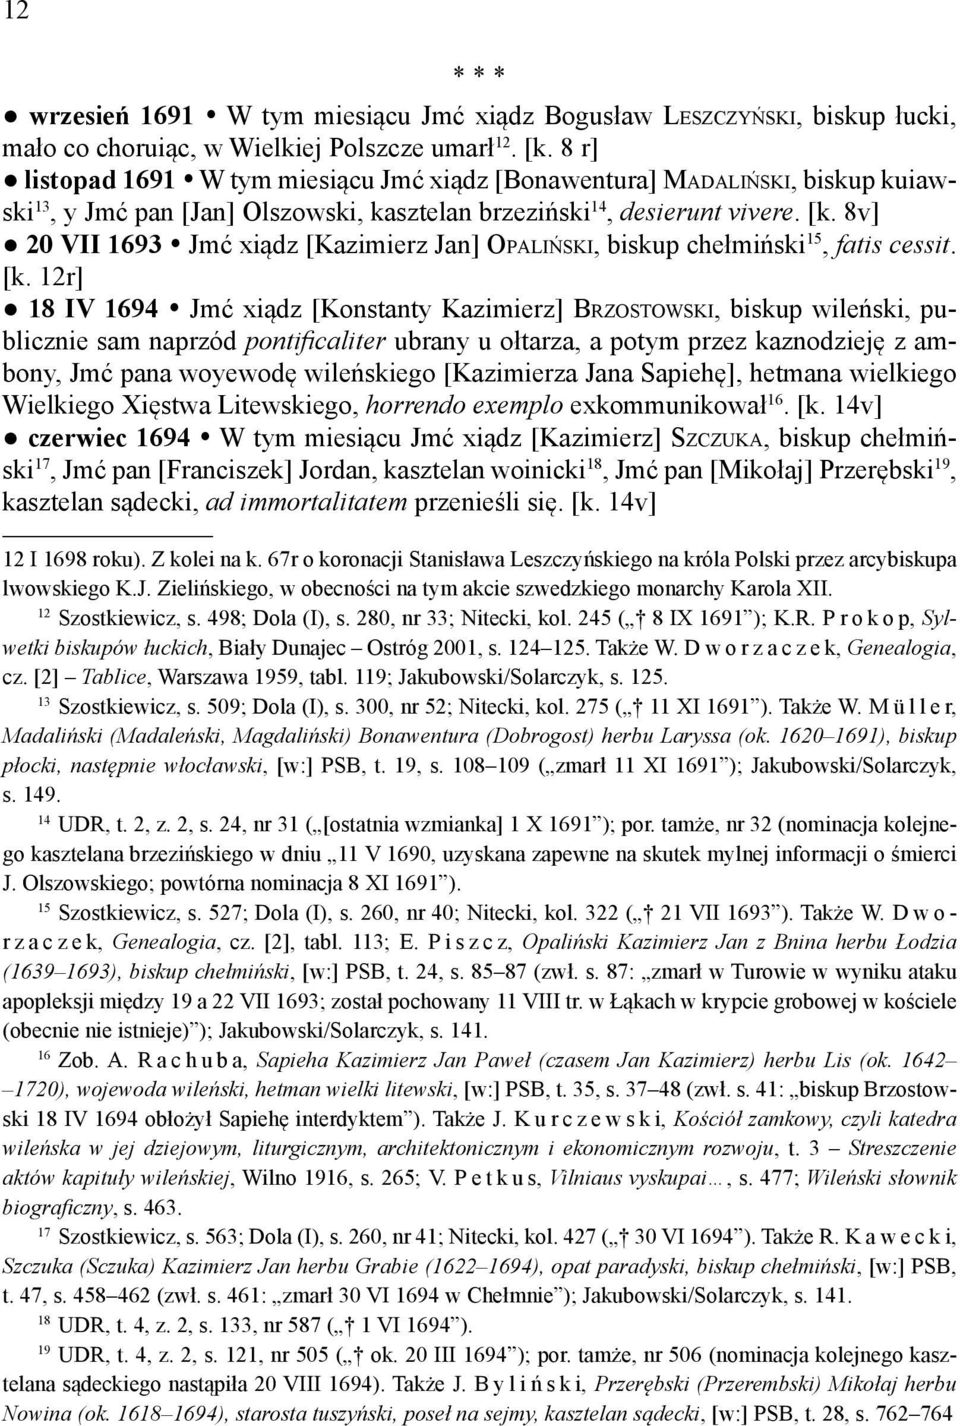 8v] 20 VII 1693 Jmć xiądz [Kazimierz Jan] OPALIŃSKI, biskup chełmiński 15, fatis cessit. [k.